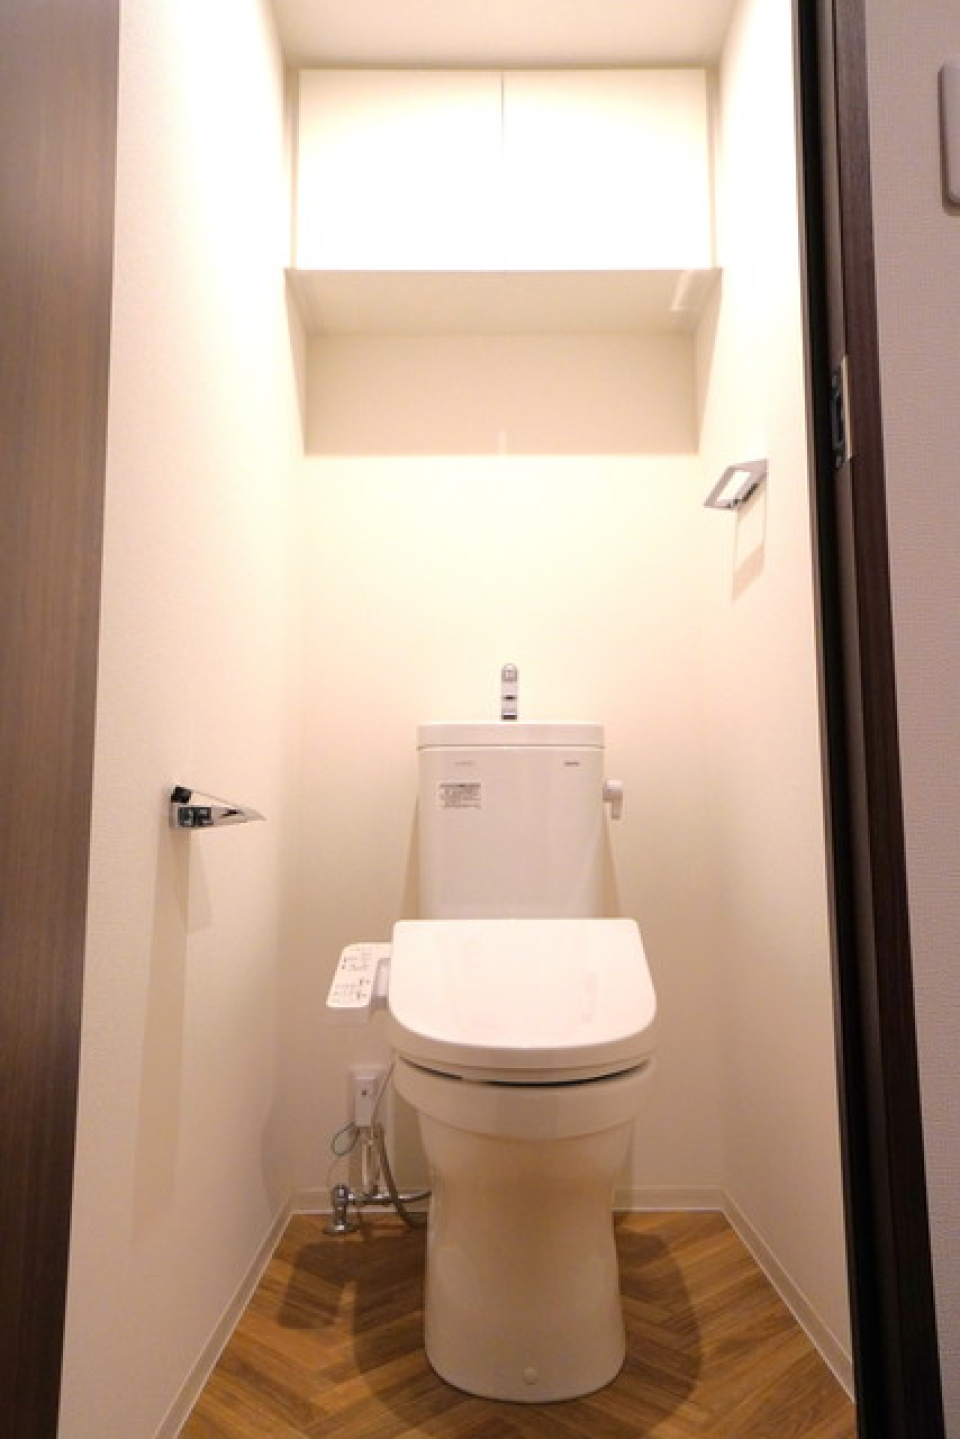 トイレはウォシュレット付きの清潔感のあるトイレになっています。
※写真は同タイプ住戸です。